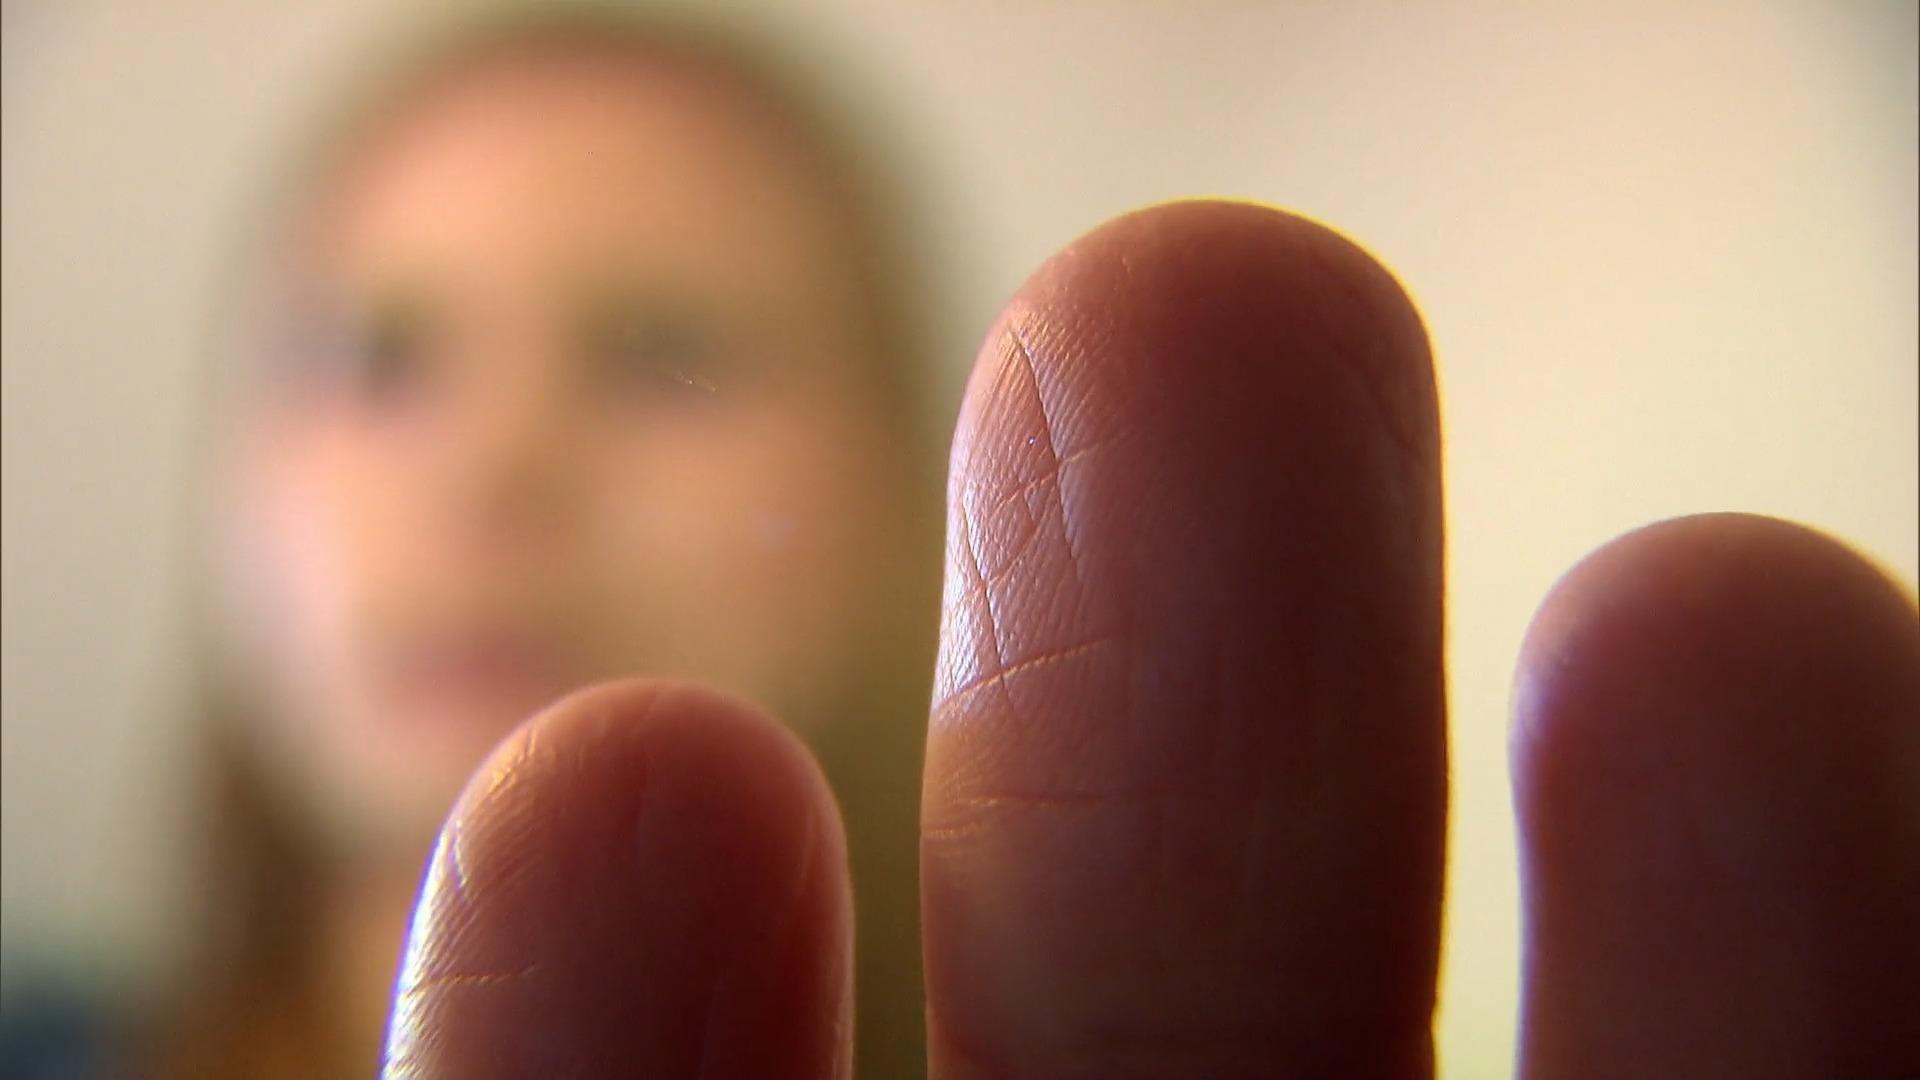 Il cancro al seno identificato da un ricercatore di impronte digitali crea scalpore